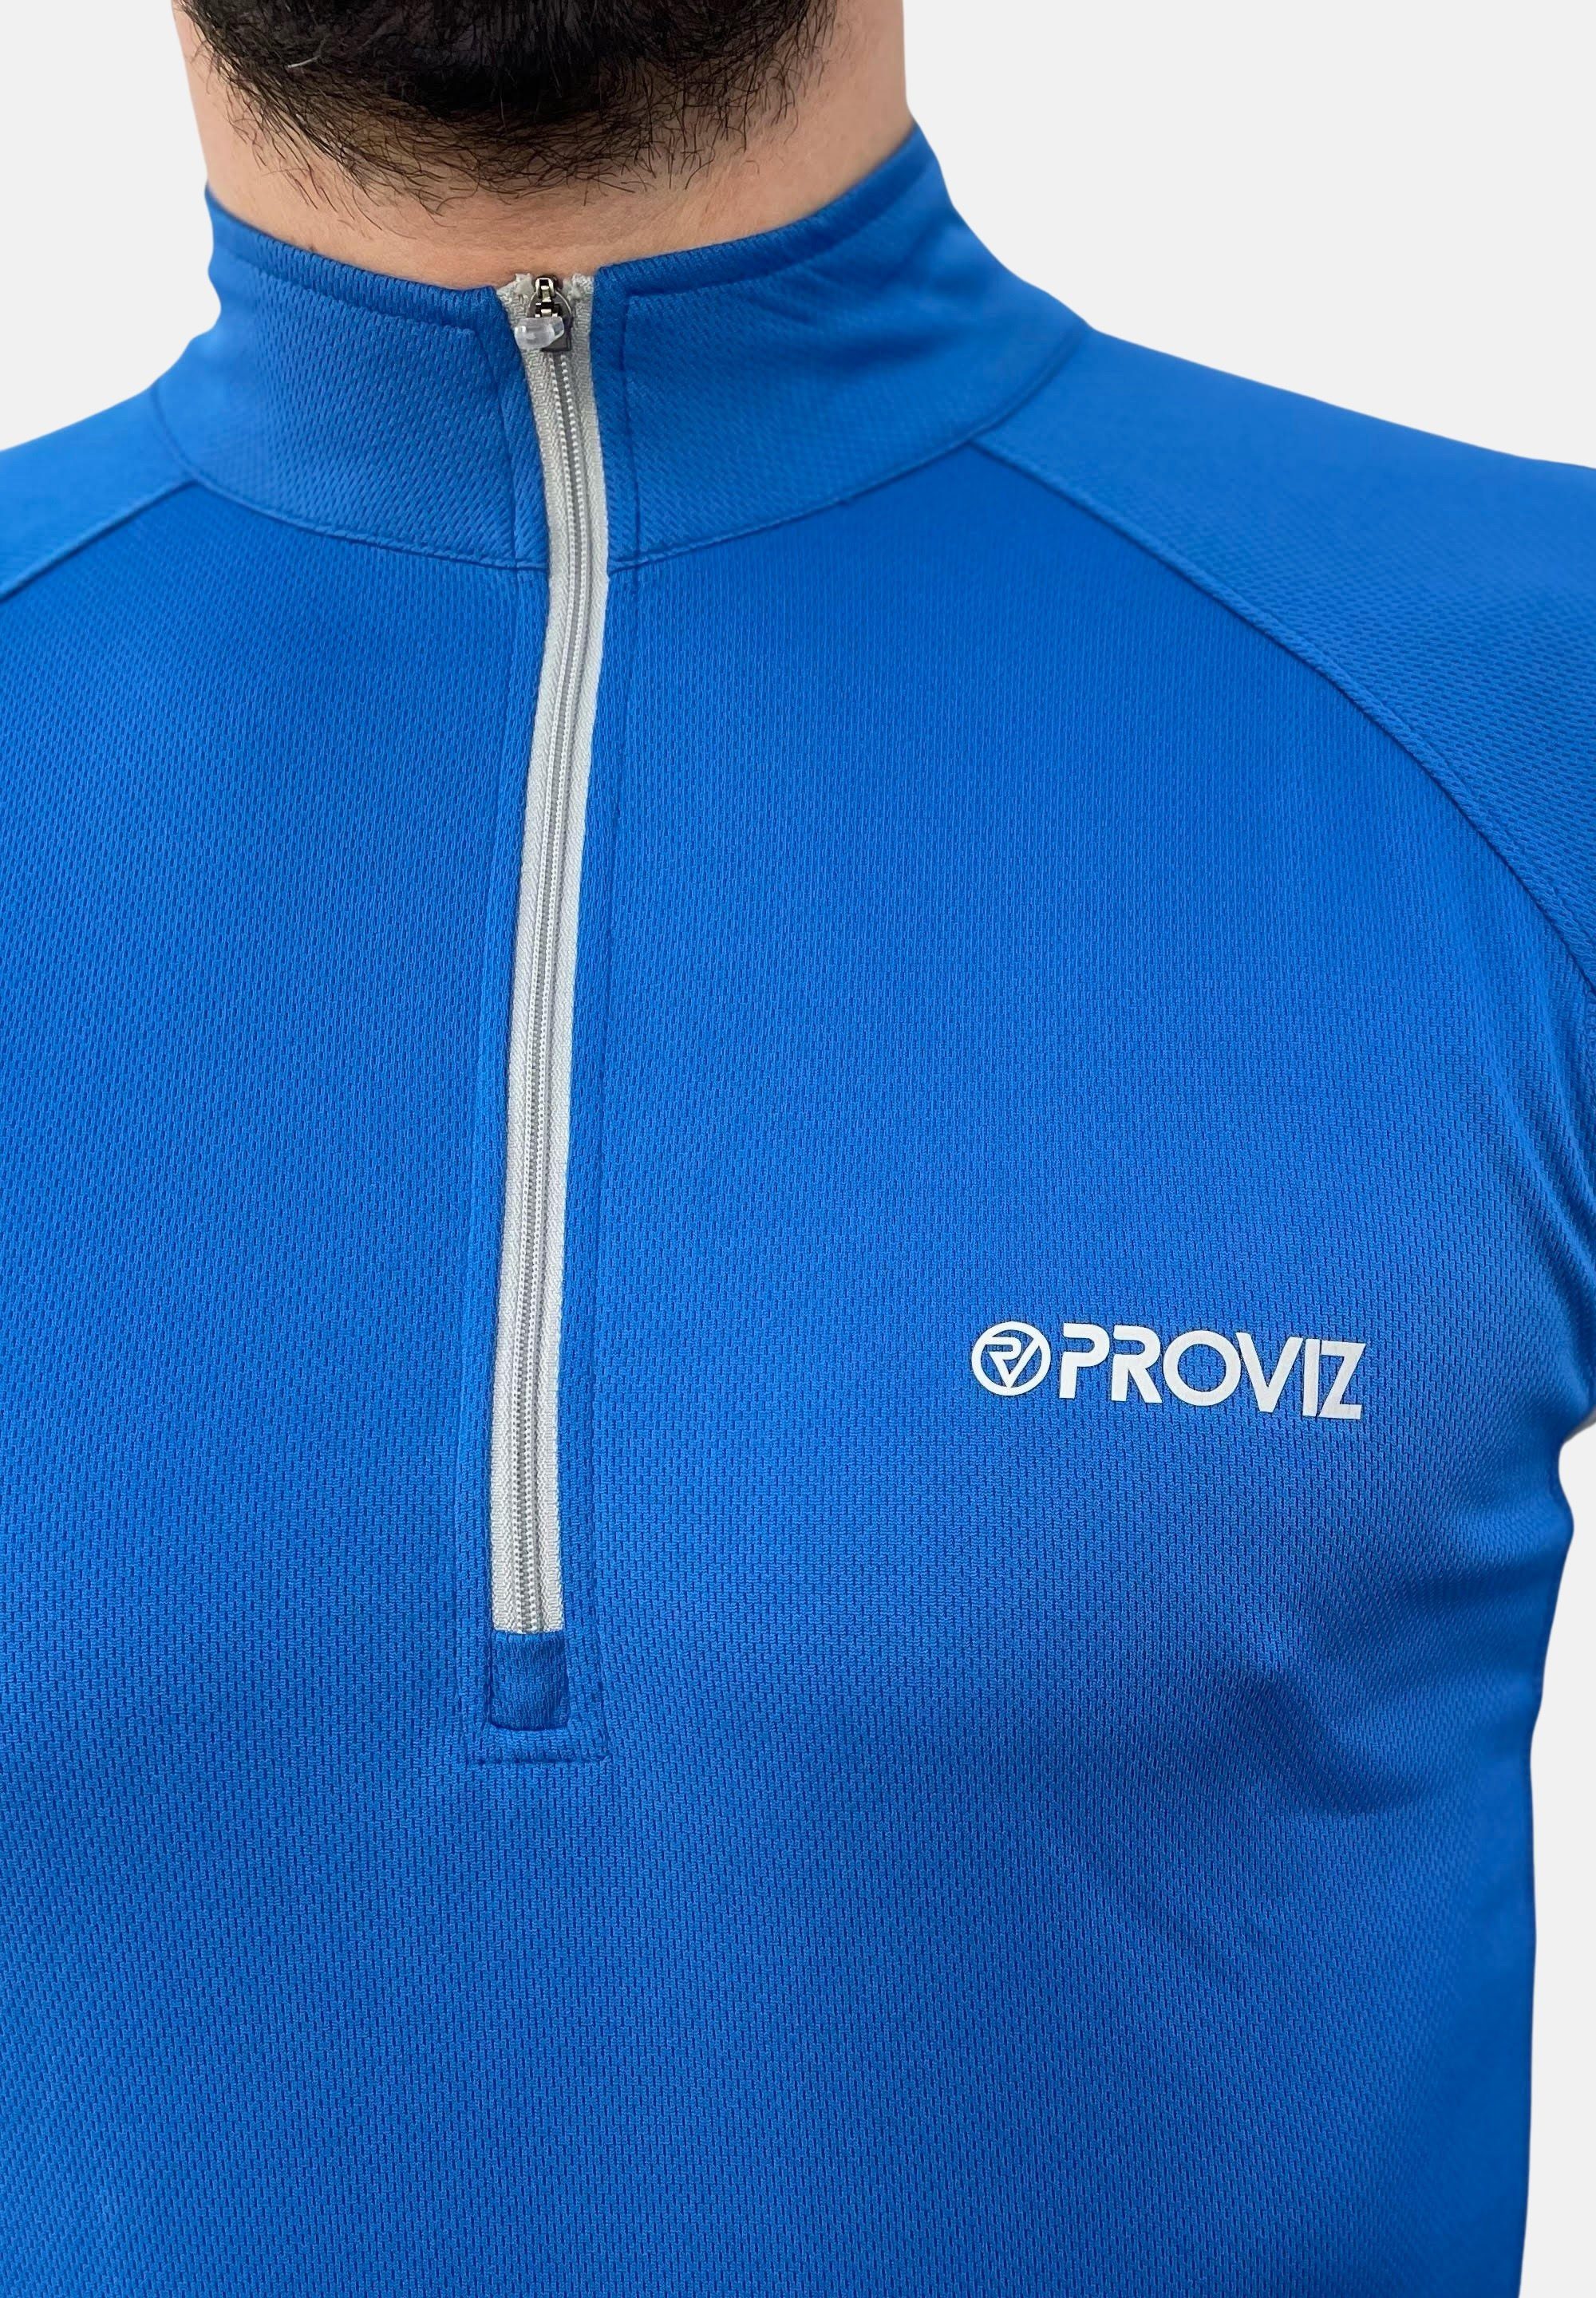 Ultraleicht, feuchtigkeitsabsorbierend, ProViz blue reflektierend Laufshirt Klassisch